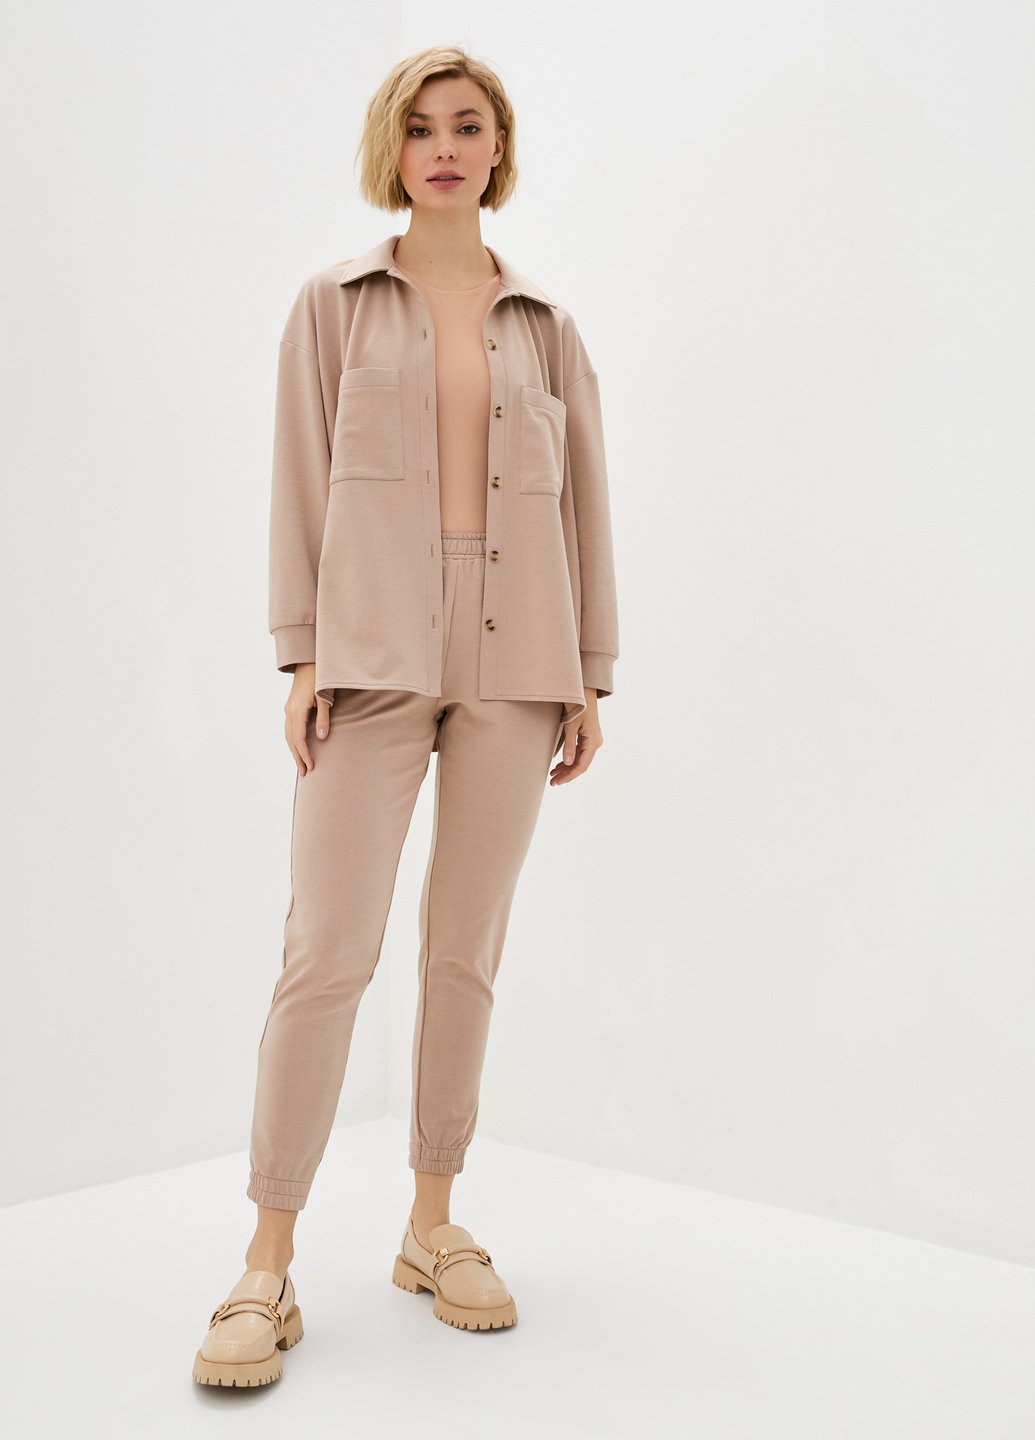 Купити Костюм жіночий з сорочкою бежевого кольору Merlini Сандерленд 100000087, розмір 42-44 в інтернет-магазині